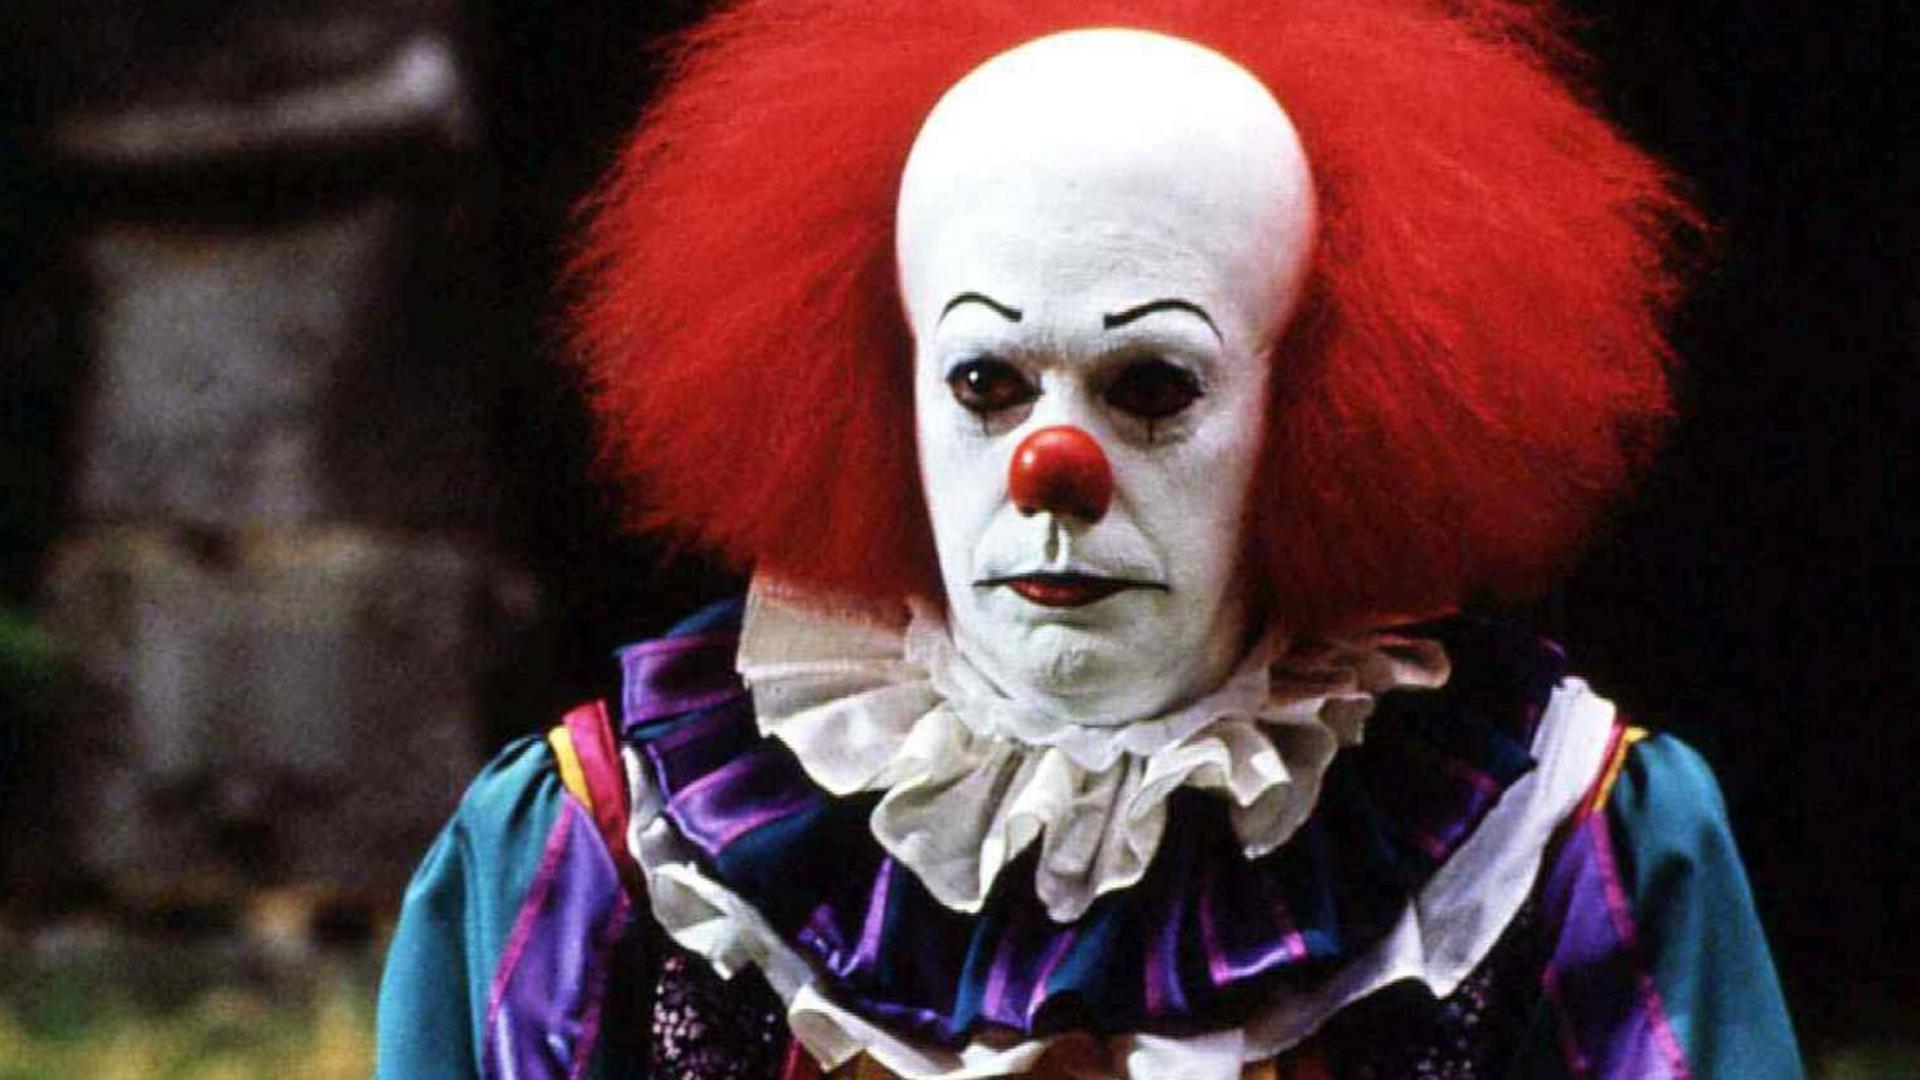 Das Böse in der Gestalt des Clowns "Pennywise" (Tim Curry) terrorisiert in Stephen Kings "Es" eine Kleinstadt.